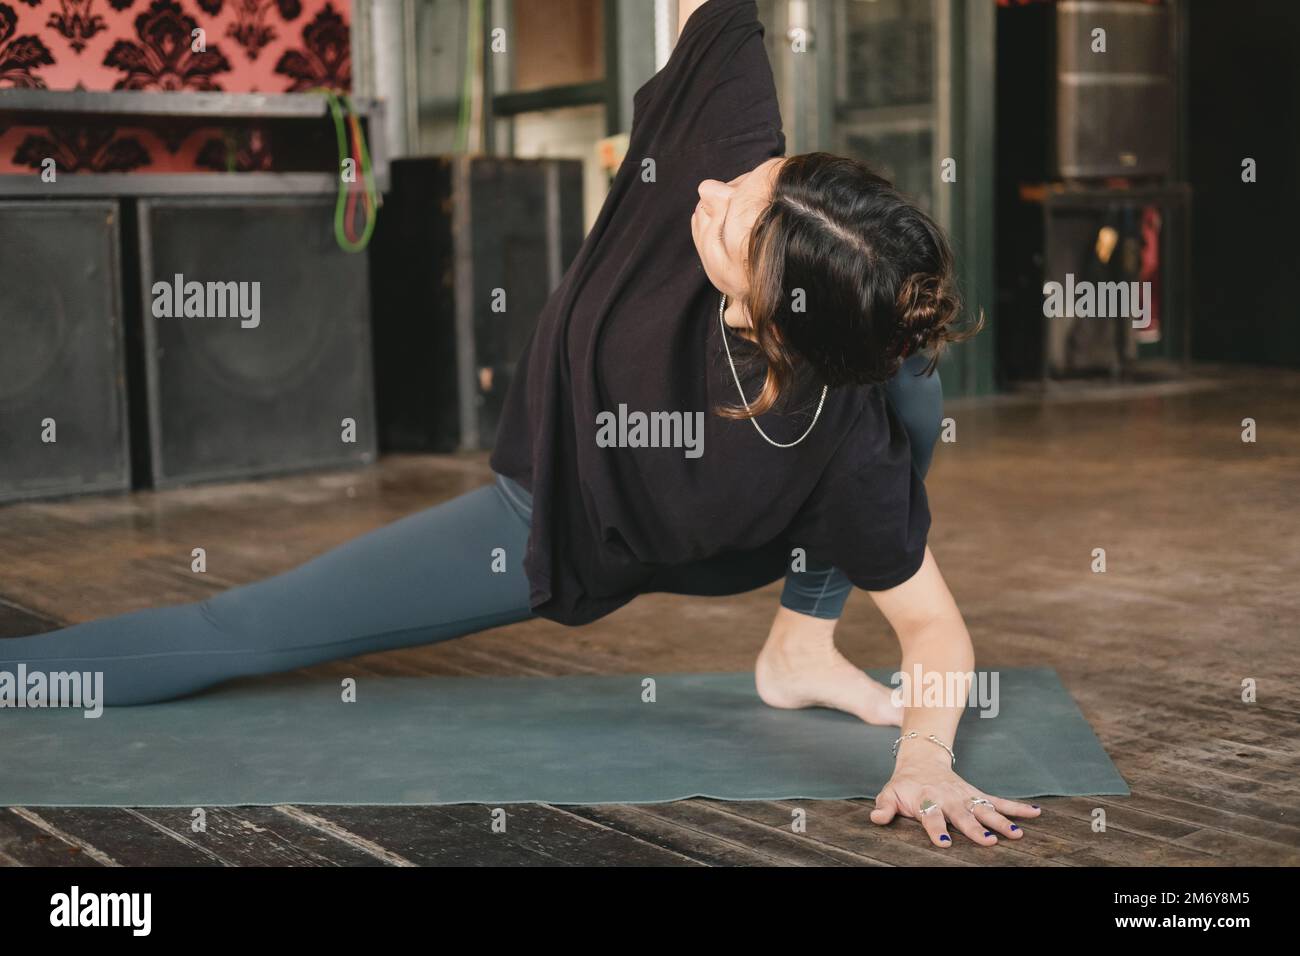 Femme yogi nouveau professeur jeune adulte faisant une pose de skandasana torsadée avec un bras au plafond portant des leggings verts dans sa pratique de yoga Banque D'Images